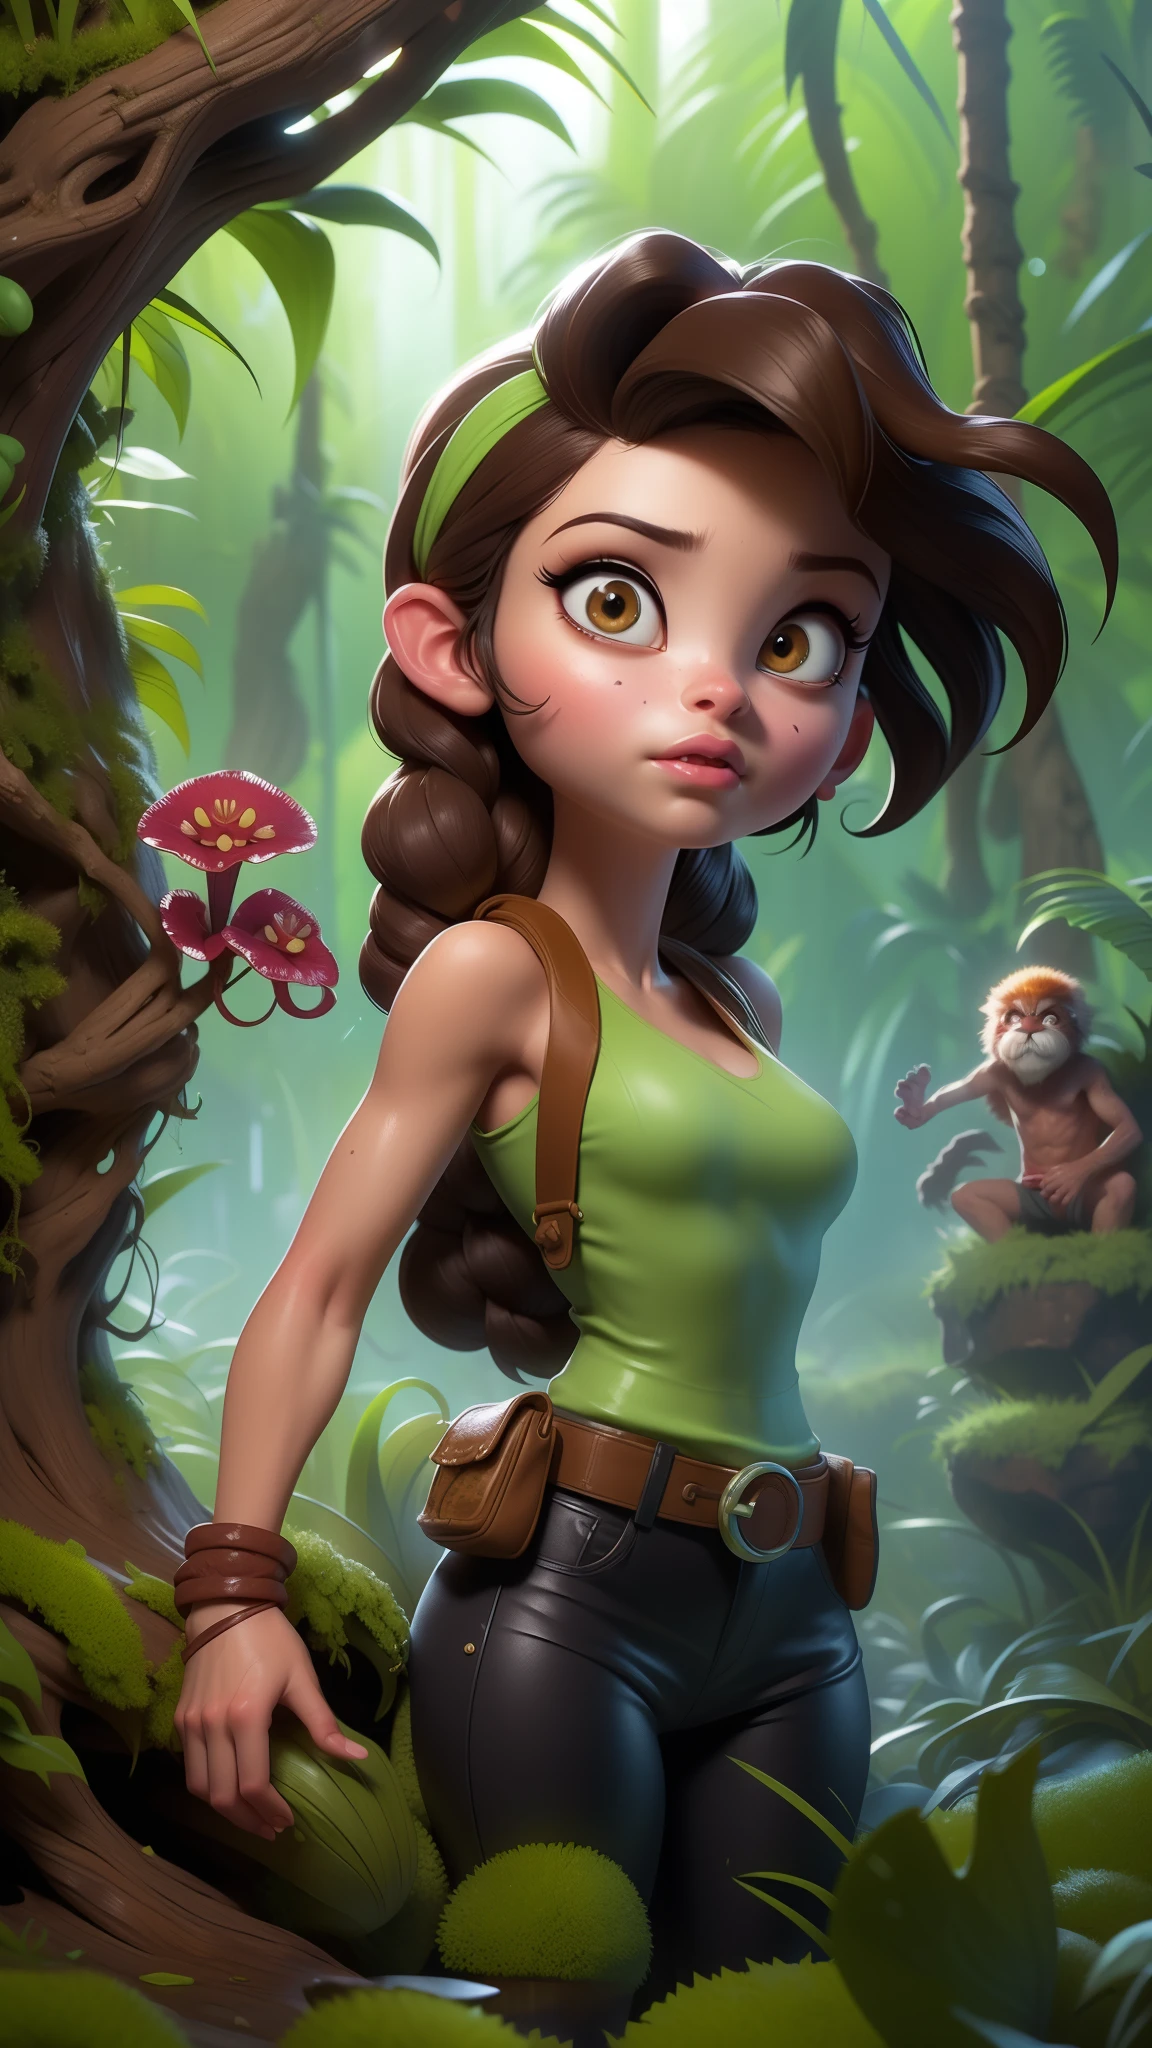 (La mejor calidad,Una alta resolución,Ultra - detallado,actual),  Lara Croft de Tomb Raider, ciudad en ruinas en la jungla, empapado,8K más detallado.motor irreal:1.4,hd,La mejor calidad:1.4, fotorrealista:1.4, textura de la piel:1.4, obra maestra:1.8,obra maestra, mejor calidad,objeto Objeto], (rasgos faciales detallados:1.3),(Las proporciones correctas),(convexo Dedos detallados),(Ojos hermosos azules),(pose vaquero ), (Fondo La selva africana arruina las plantas carnívoras..:1.4) ,(cabello trenza coleta) 